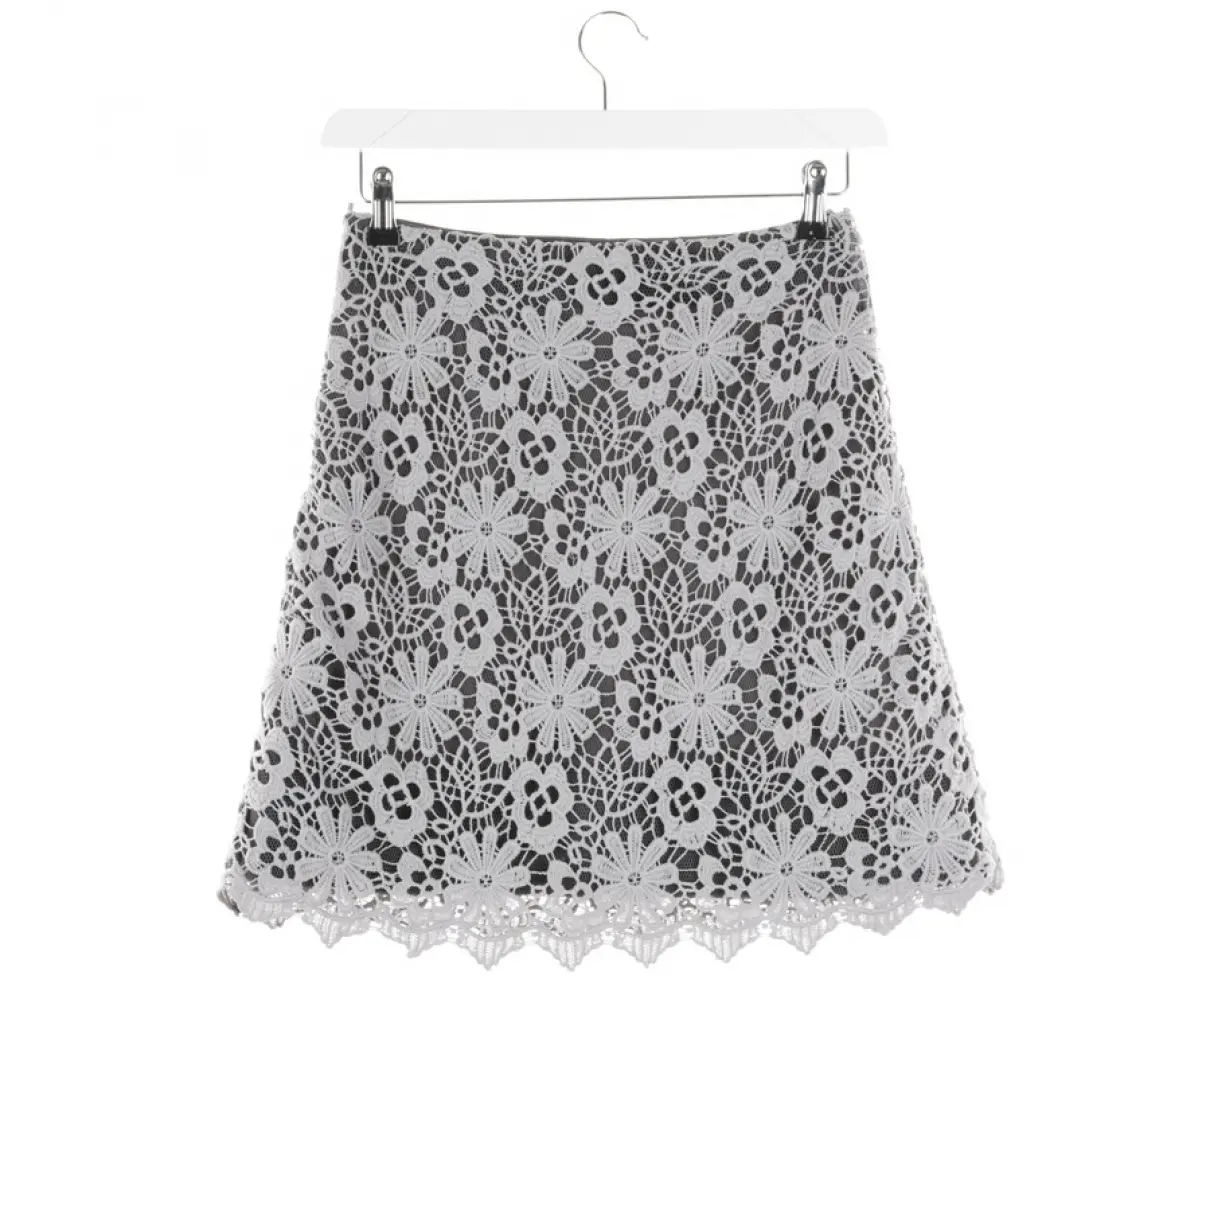 Buy Dorothee Schumacher Skirt online